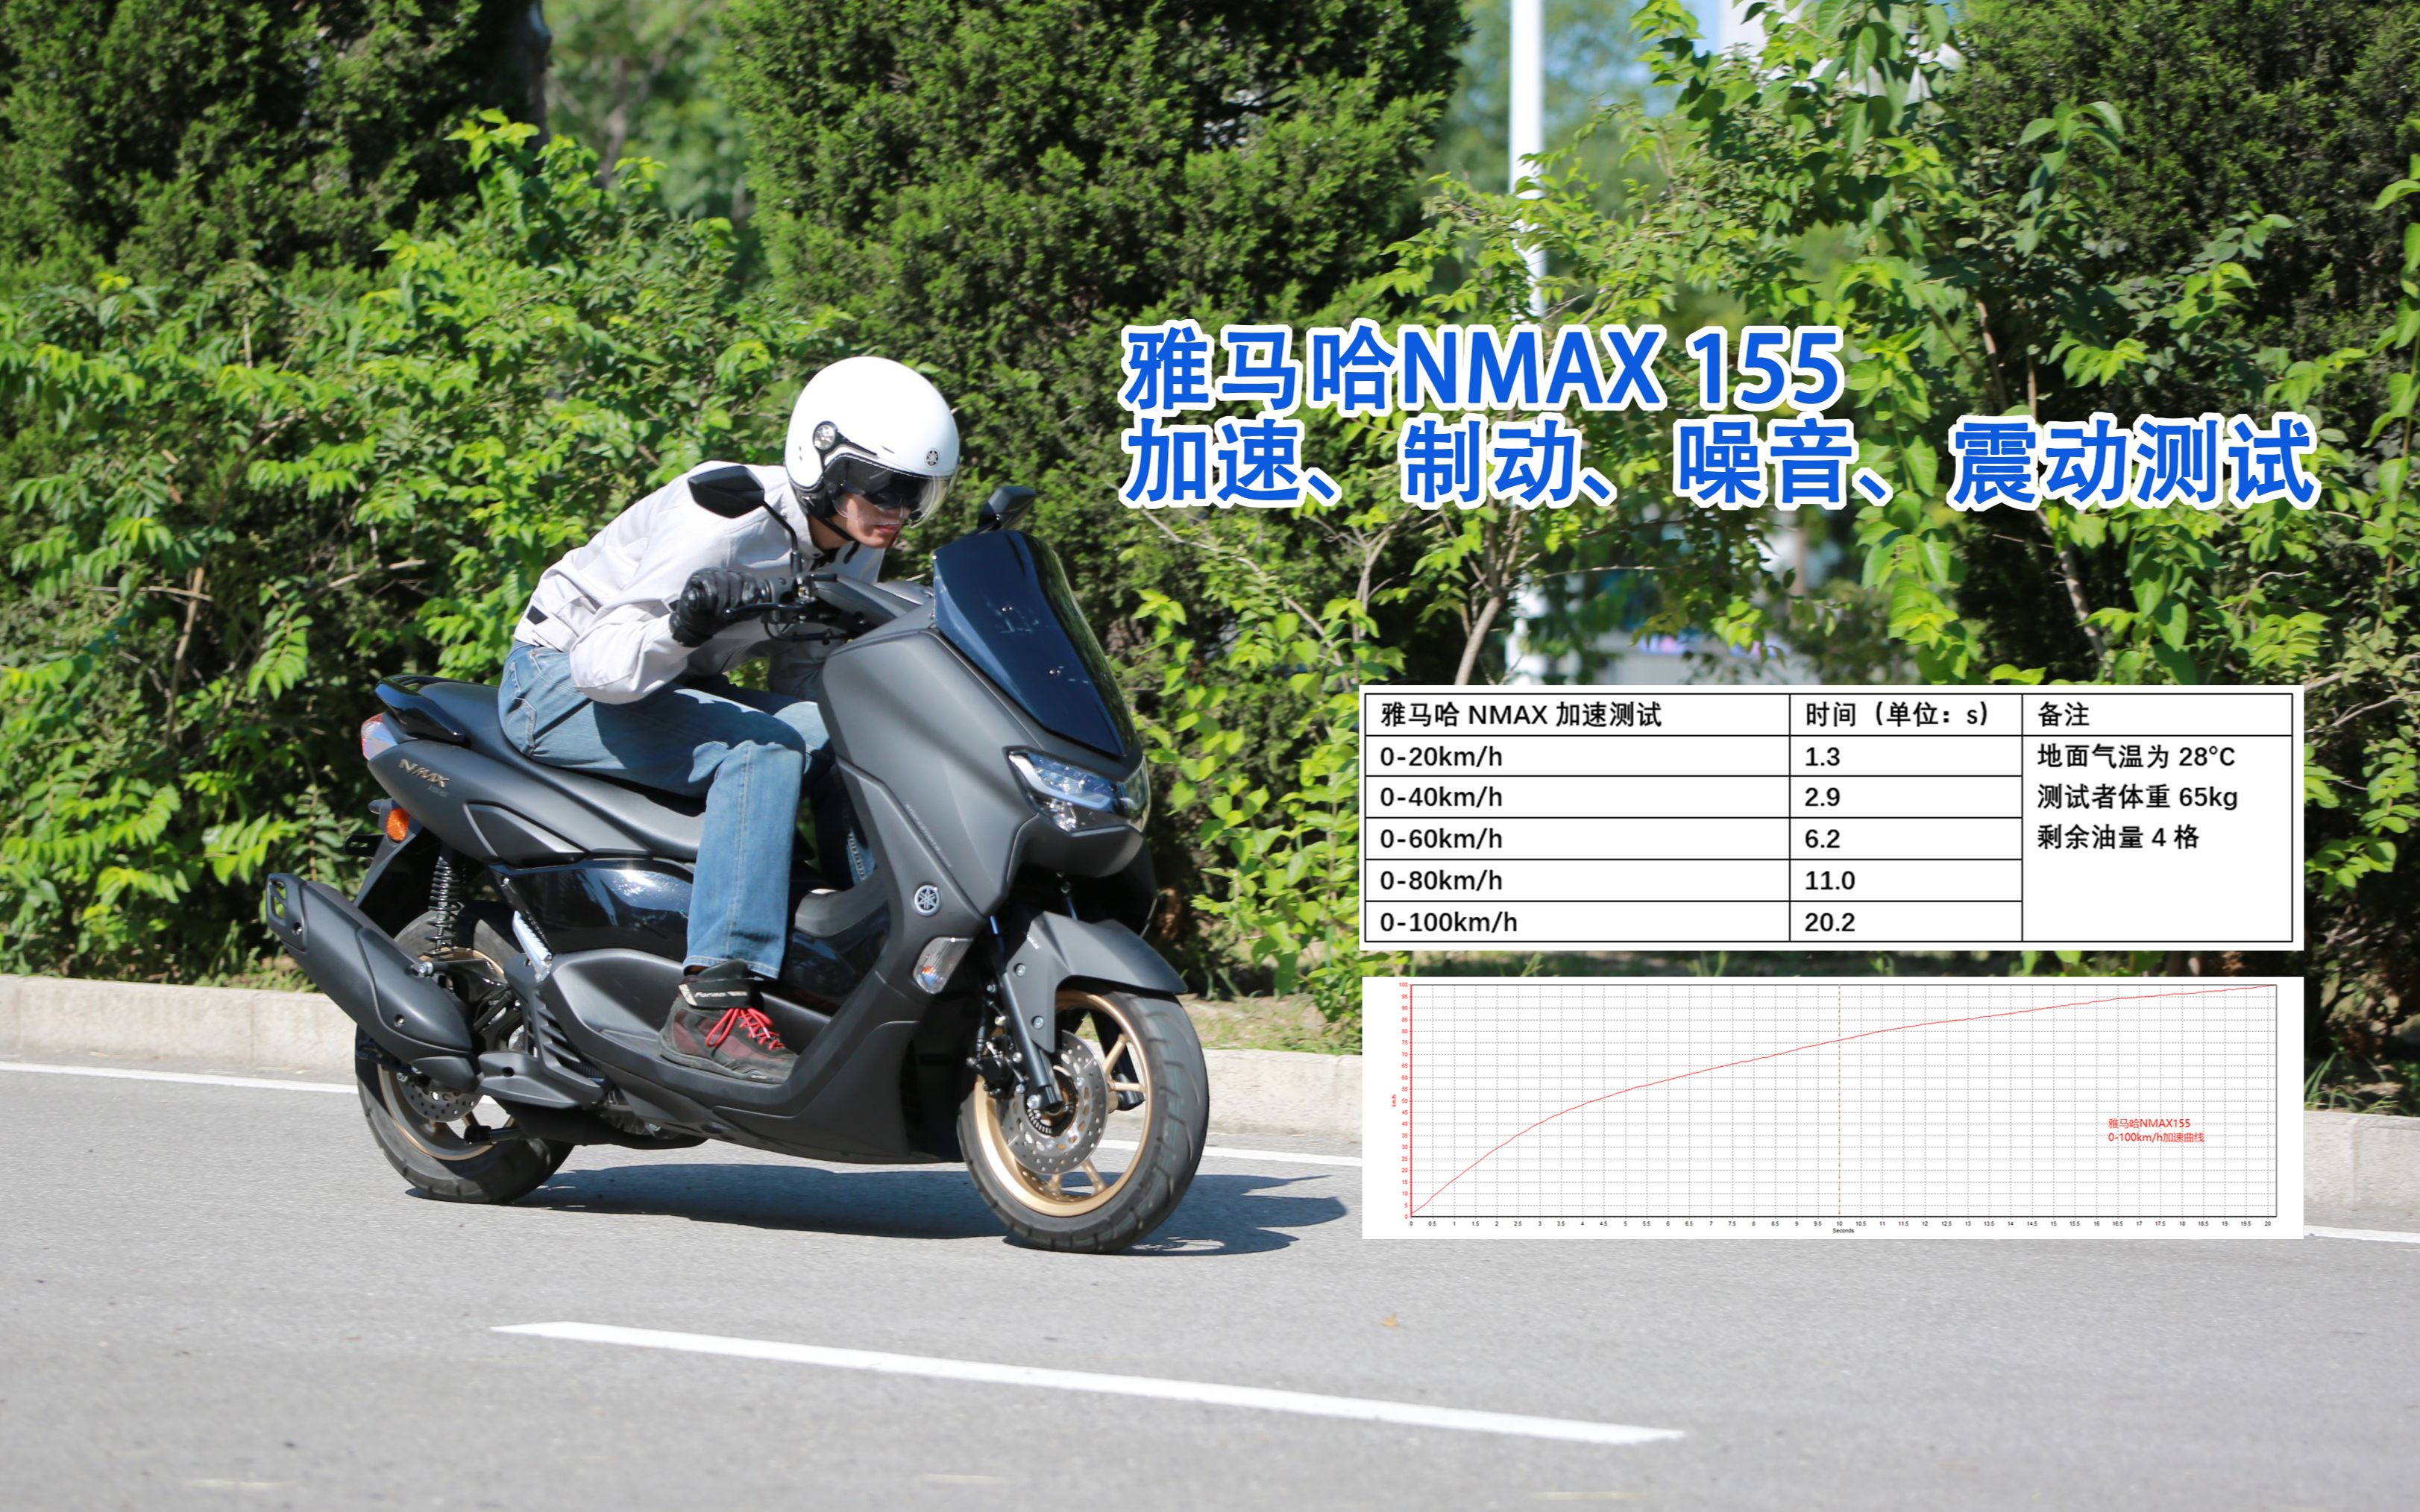 摩托车杂志车评雅马哈nmax155加速制动噪音震动测试